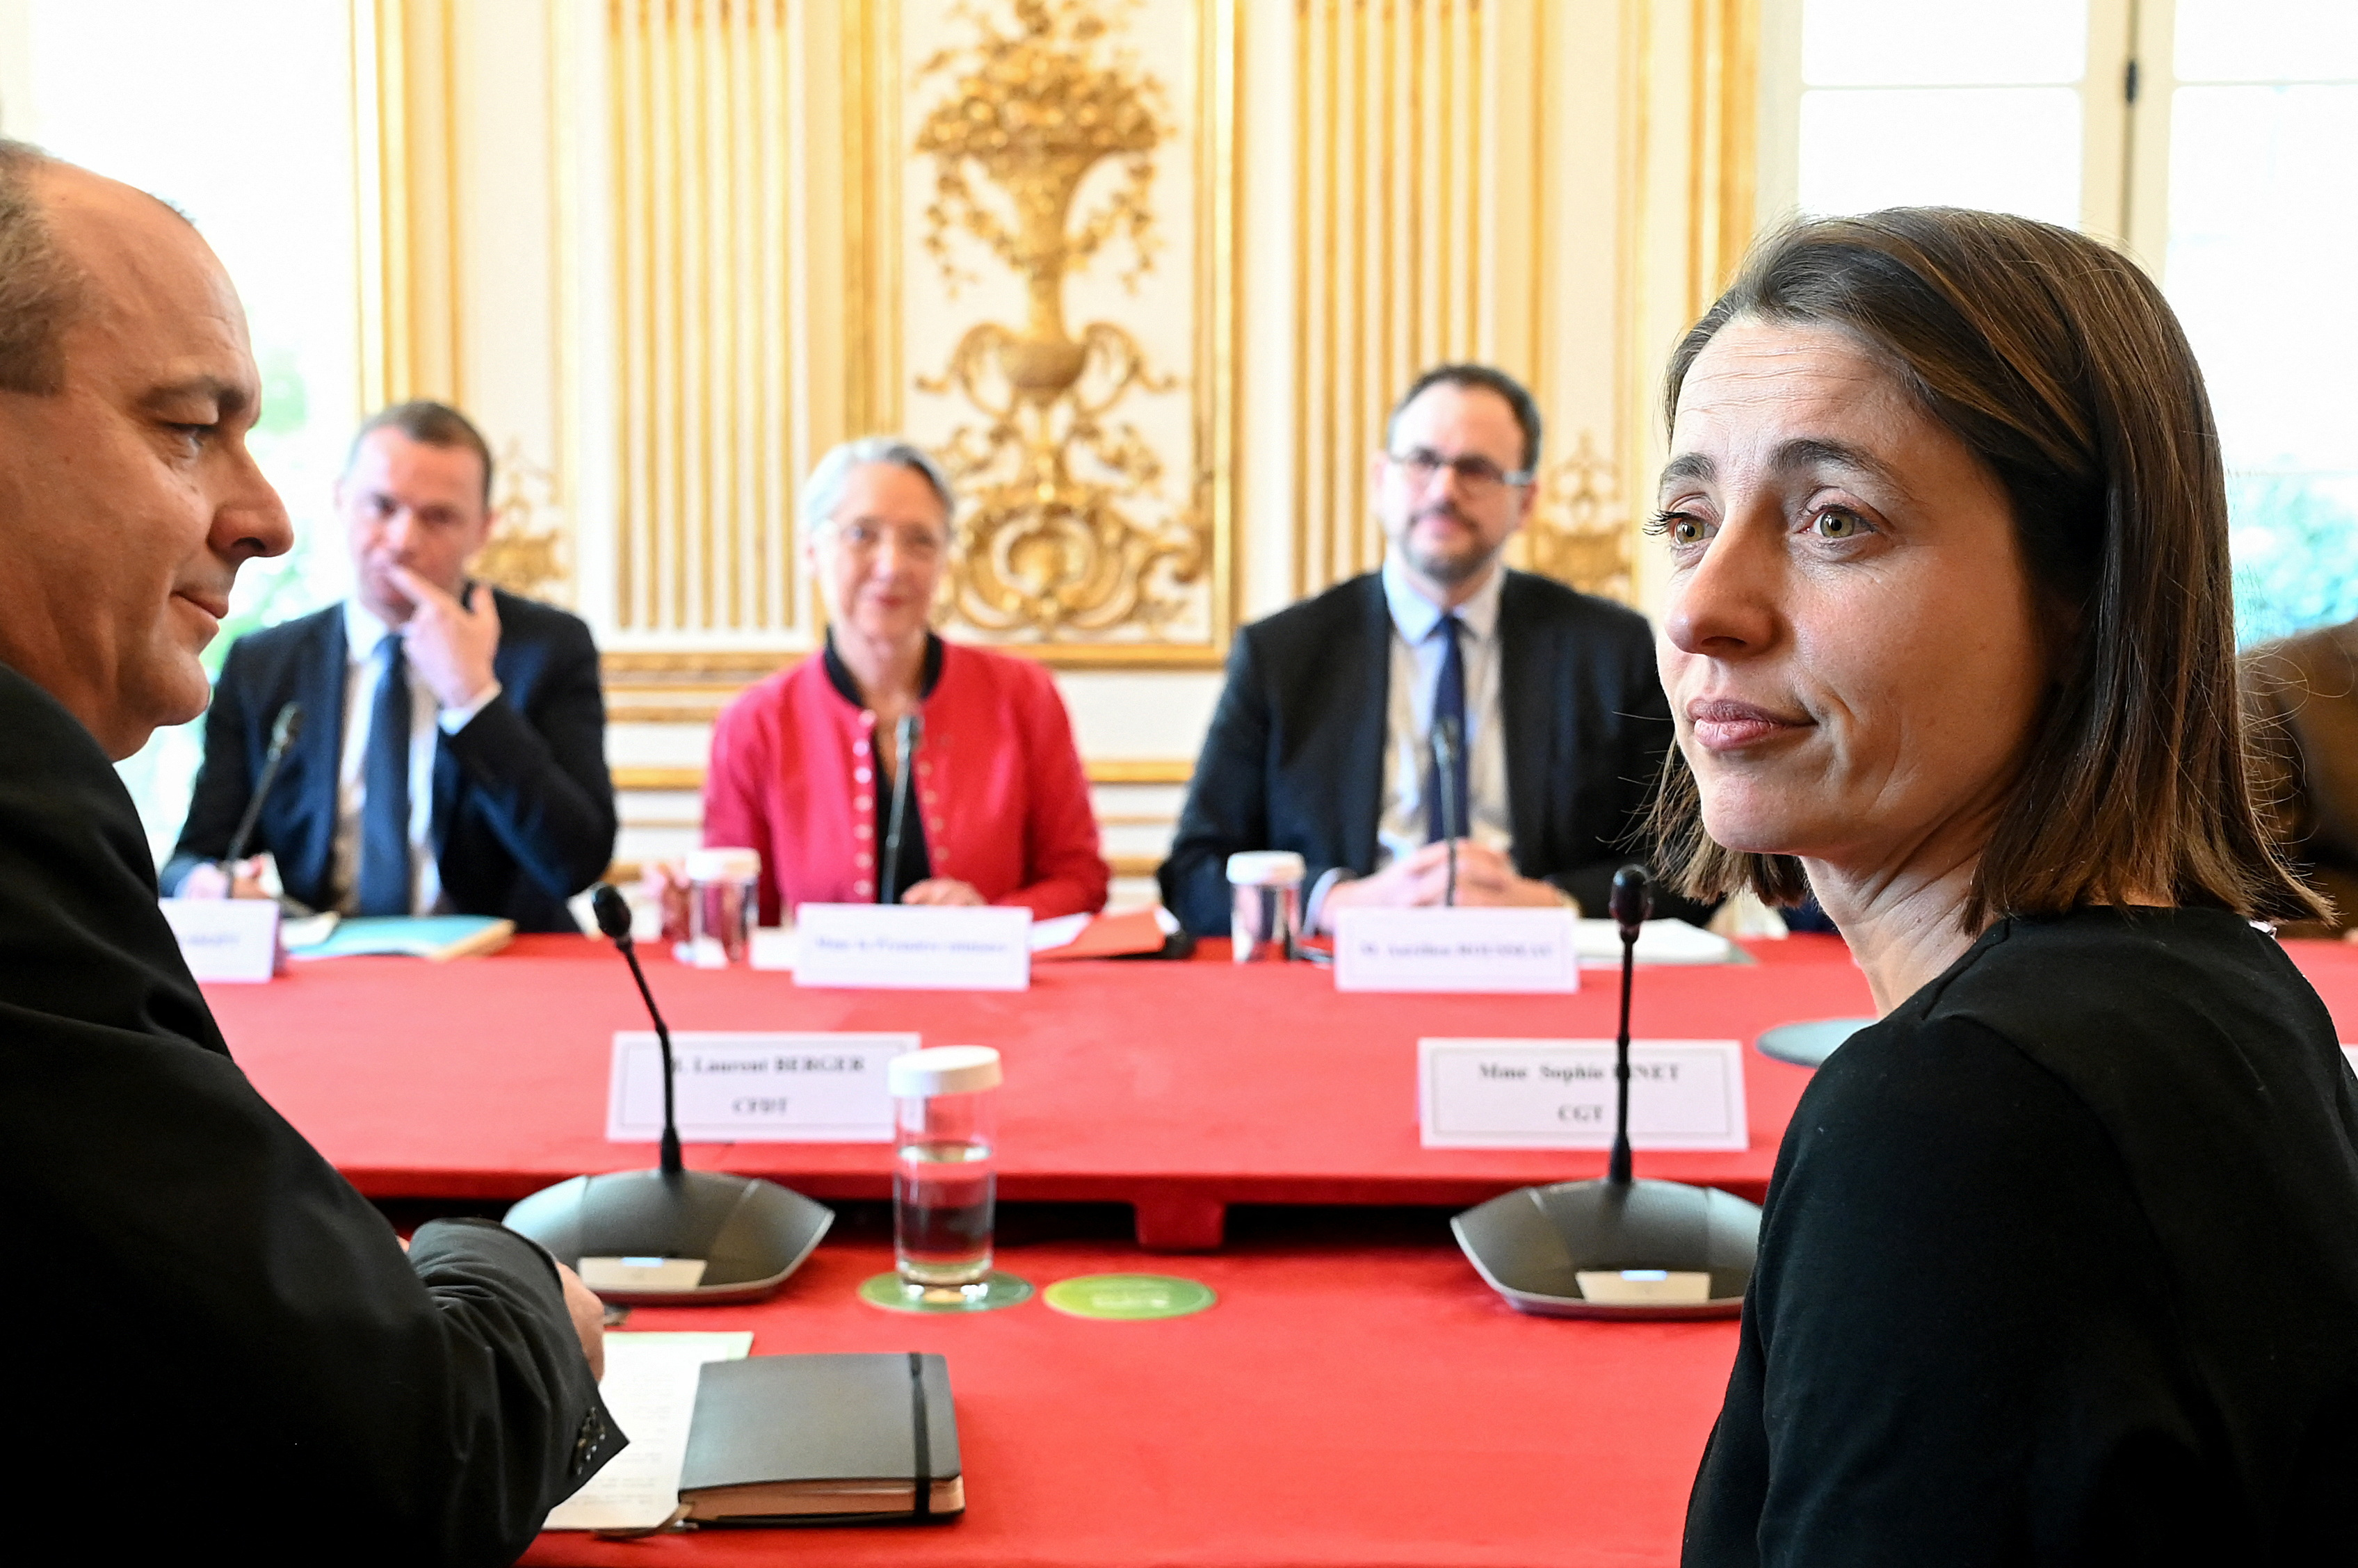 Ο Γάλλος πρωθυπουργός Μπορν συναντά τα γαλλικά συνδικάτα για τη μεταρρύθμιση του συνταξιοδοτικού συστήματος στο Παρίσι